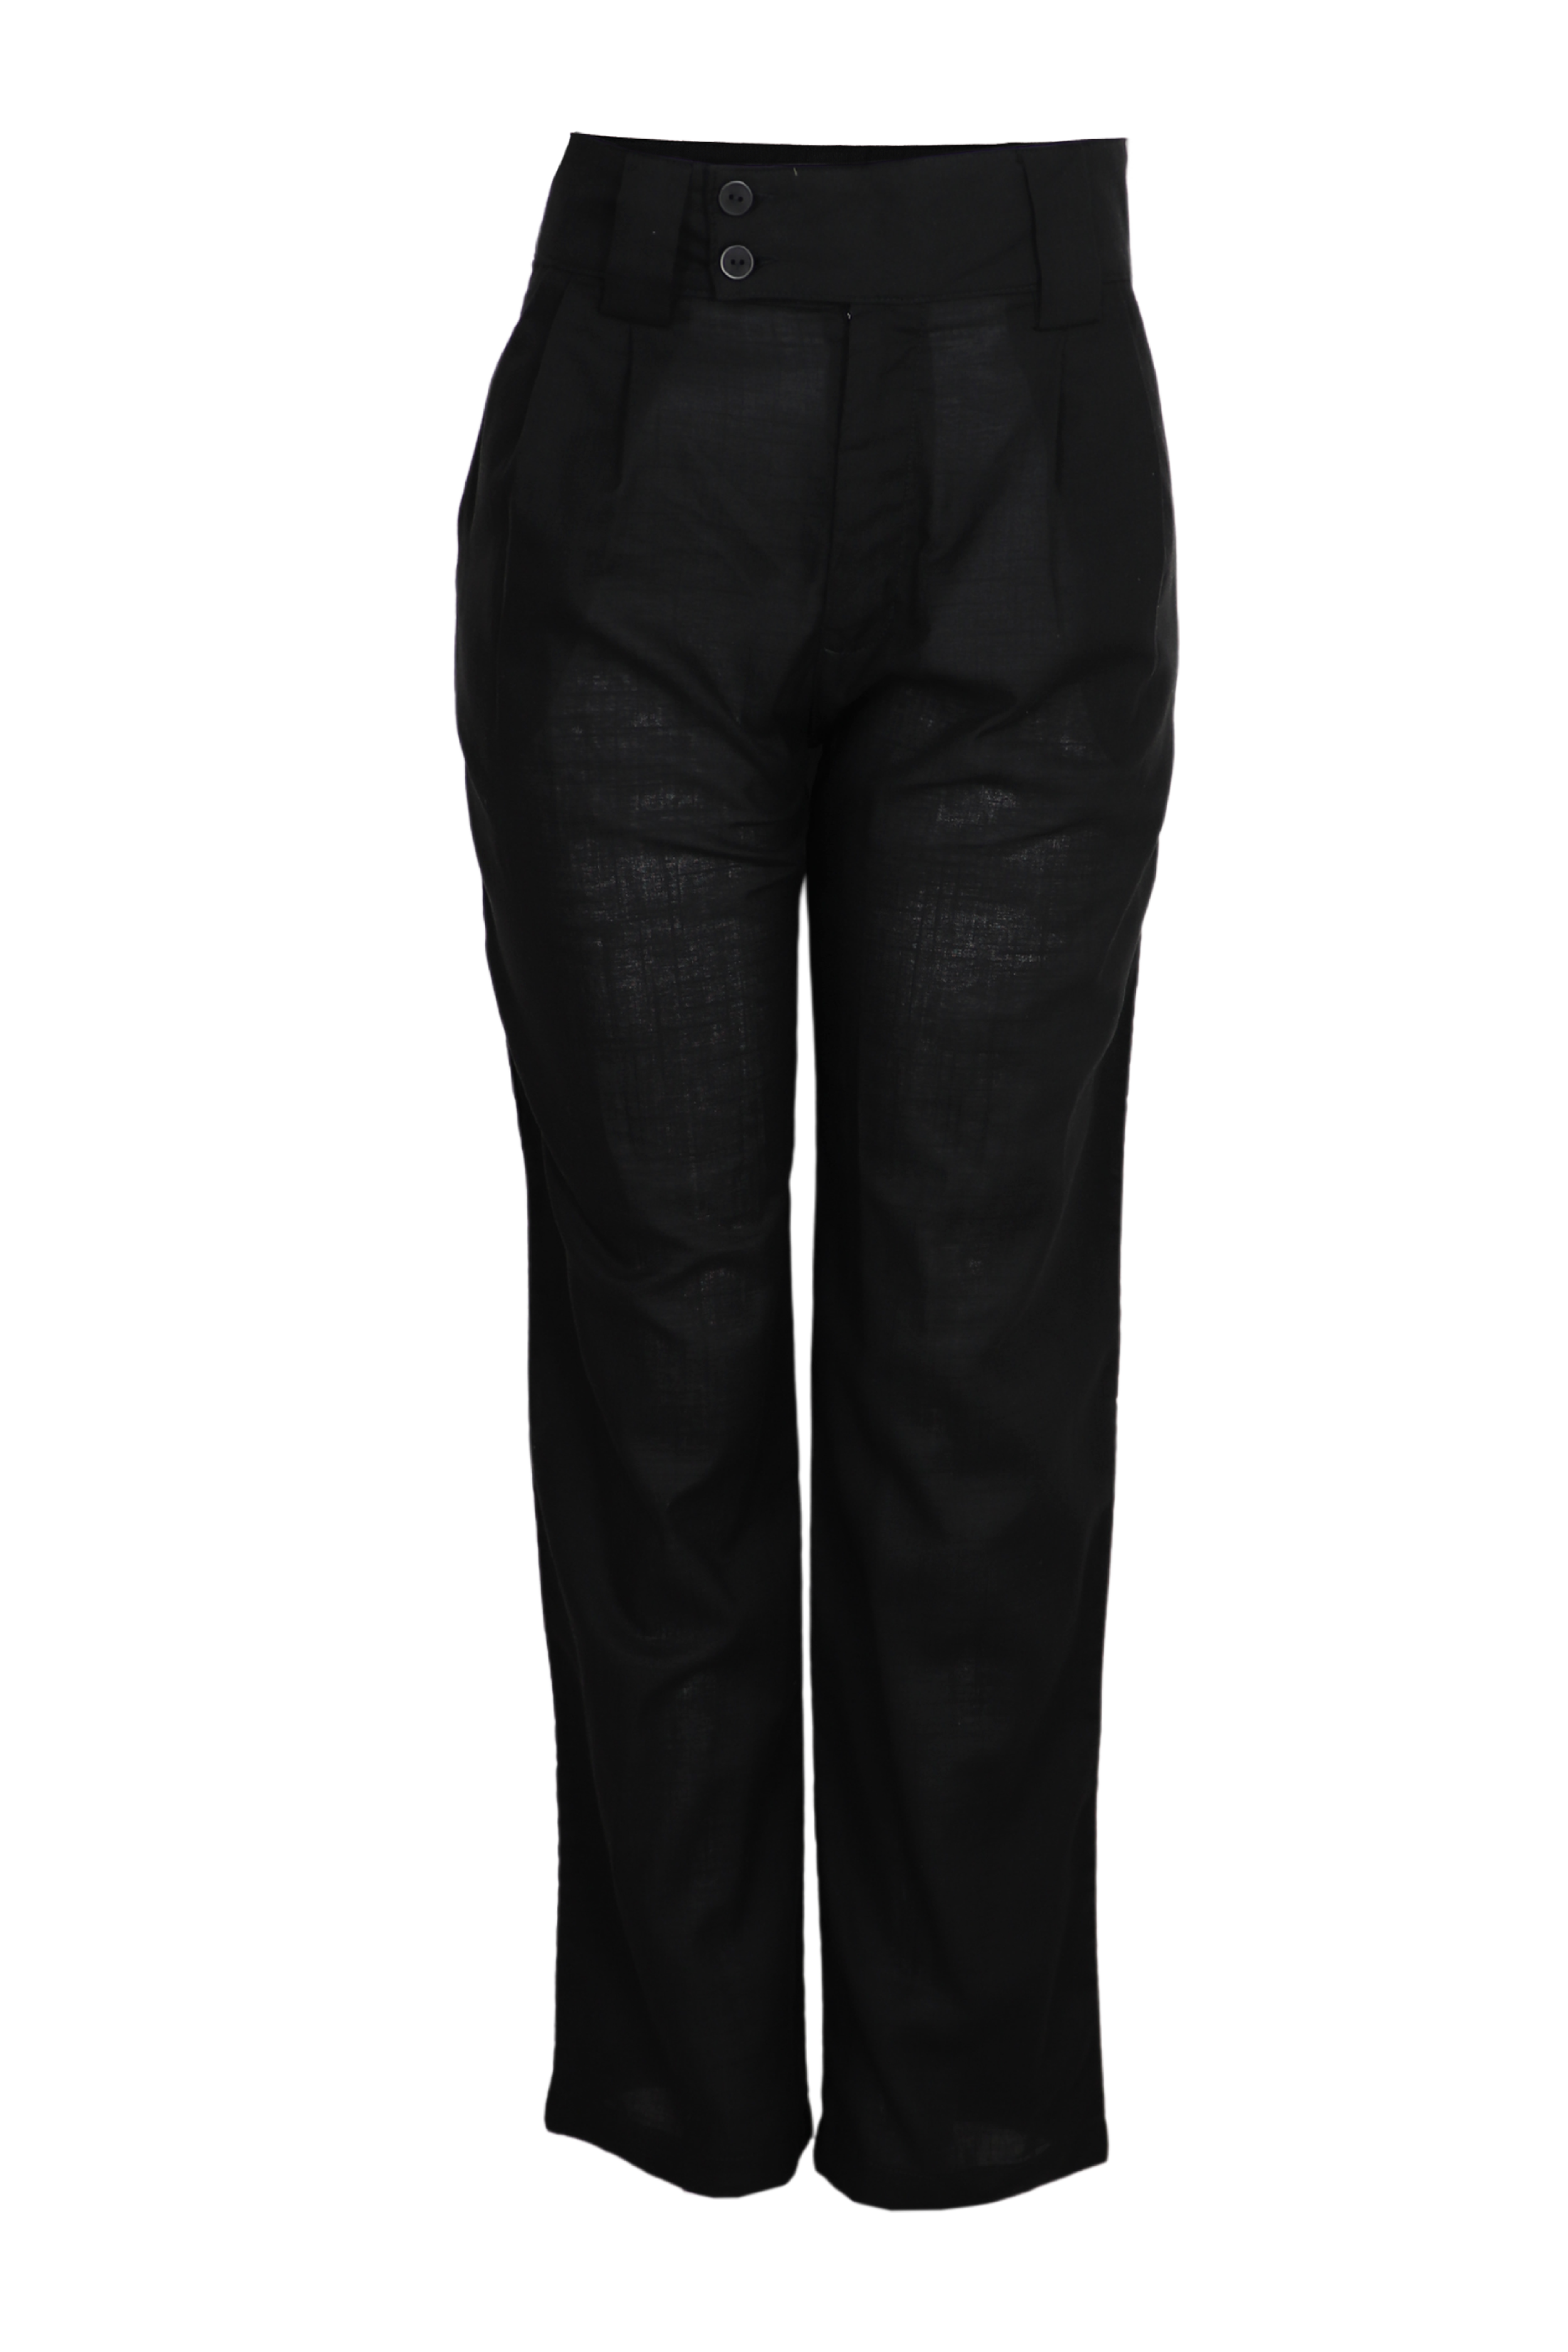 Hermoso pantalón con pretina ancha color negro